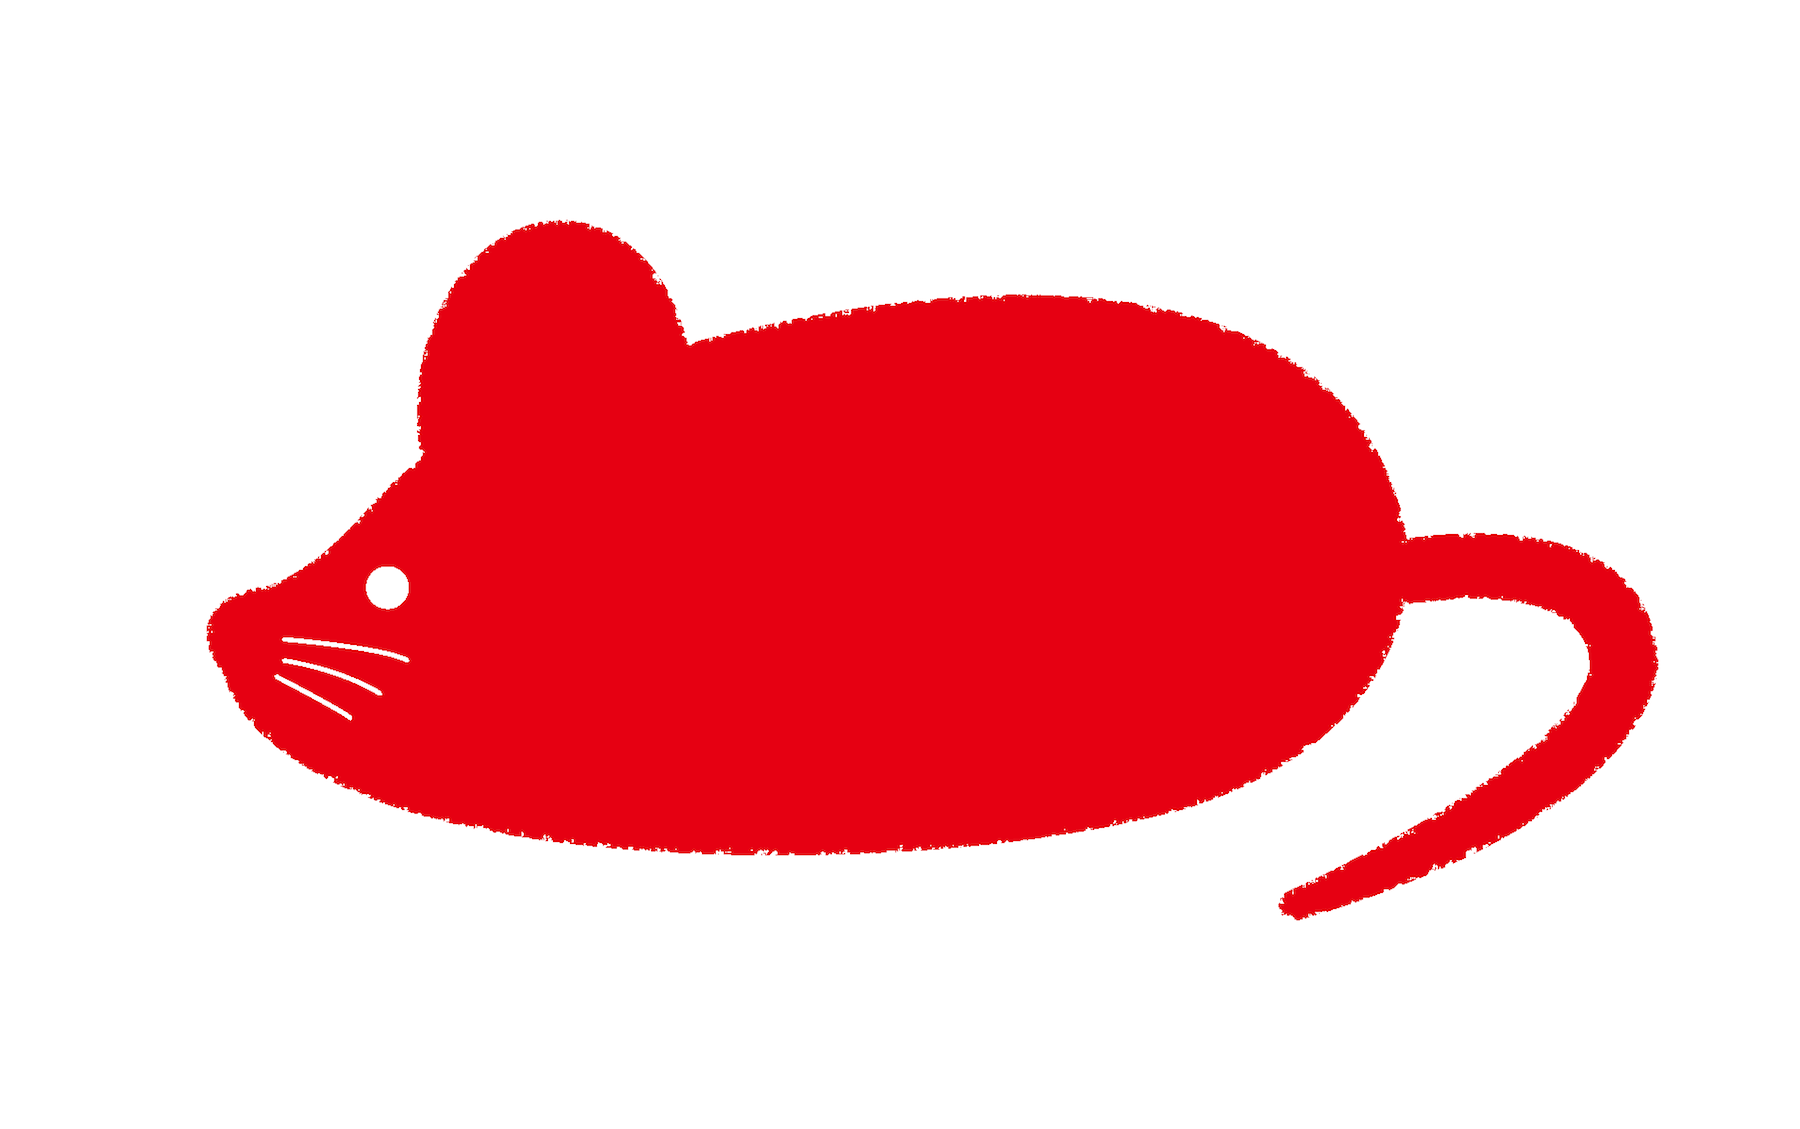 ネズミのシルエットイラスト 2020年 年賀状素材